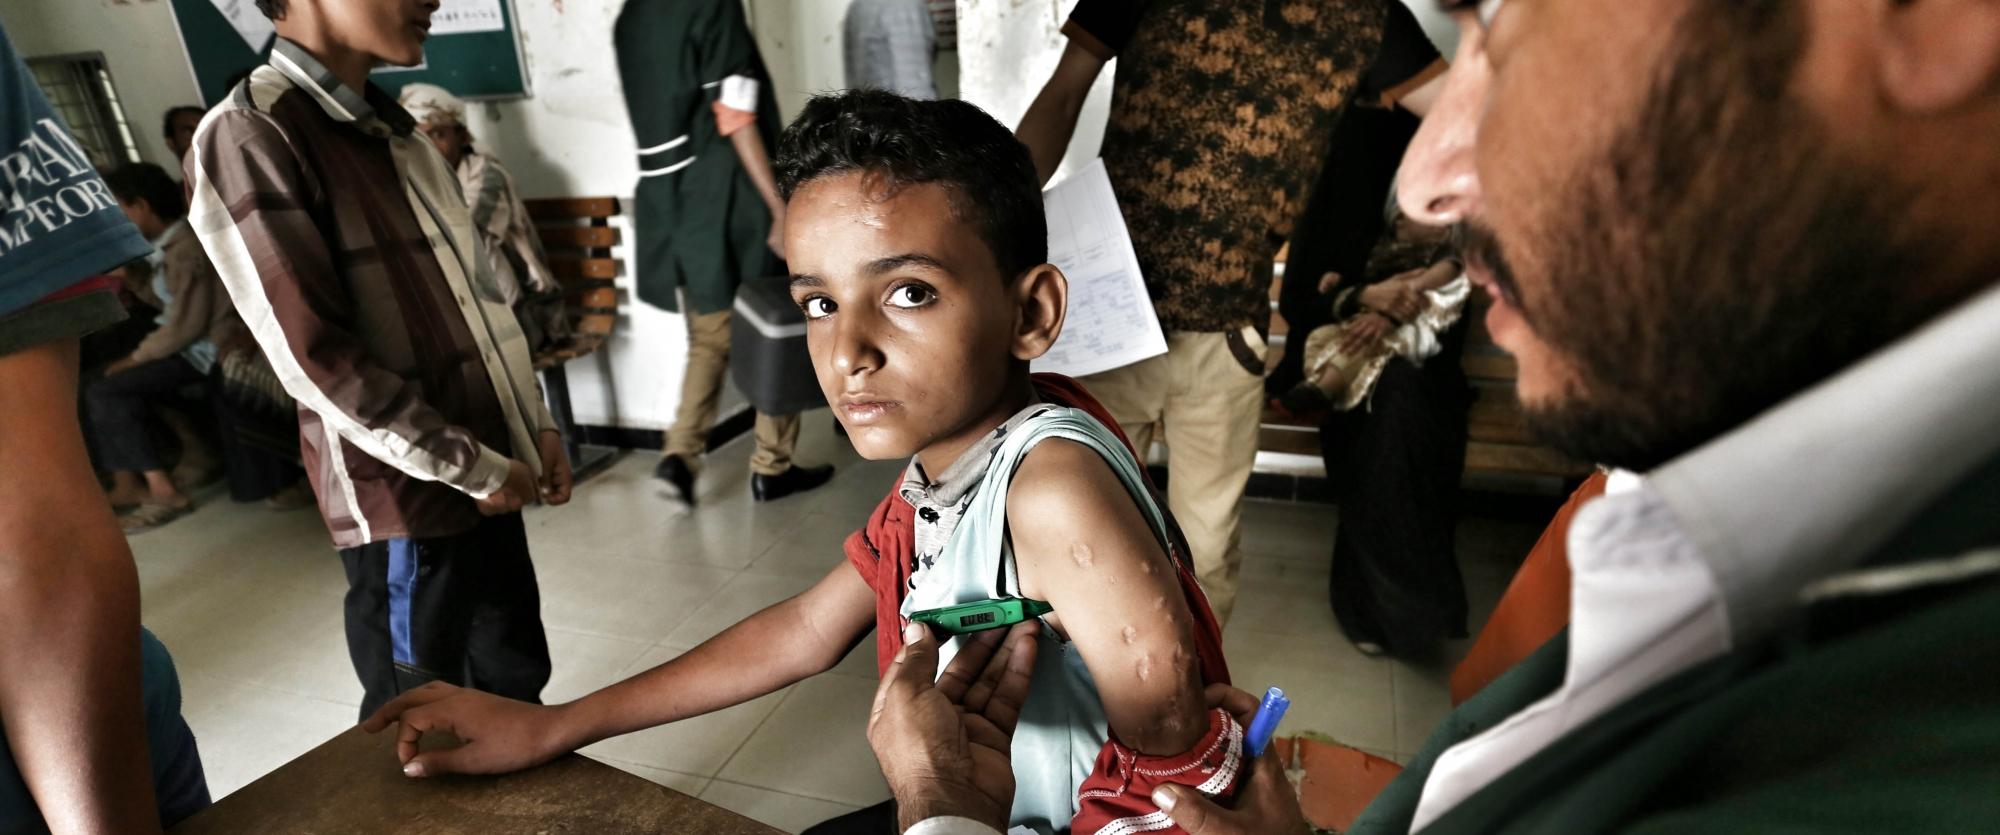 Un jeune garçon âgé de 12 ans été blessé par des éclats d'obus aux bras et aux jambes, à la suite d'un bombardement aérien qui a frappé sa maison dans le village d'Al-Bajah, dans la région de Sanah à Qatabah. Septembre 2016.